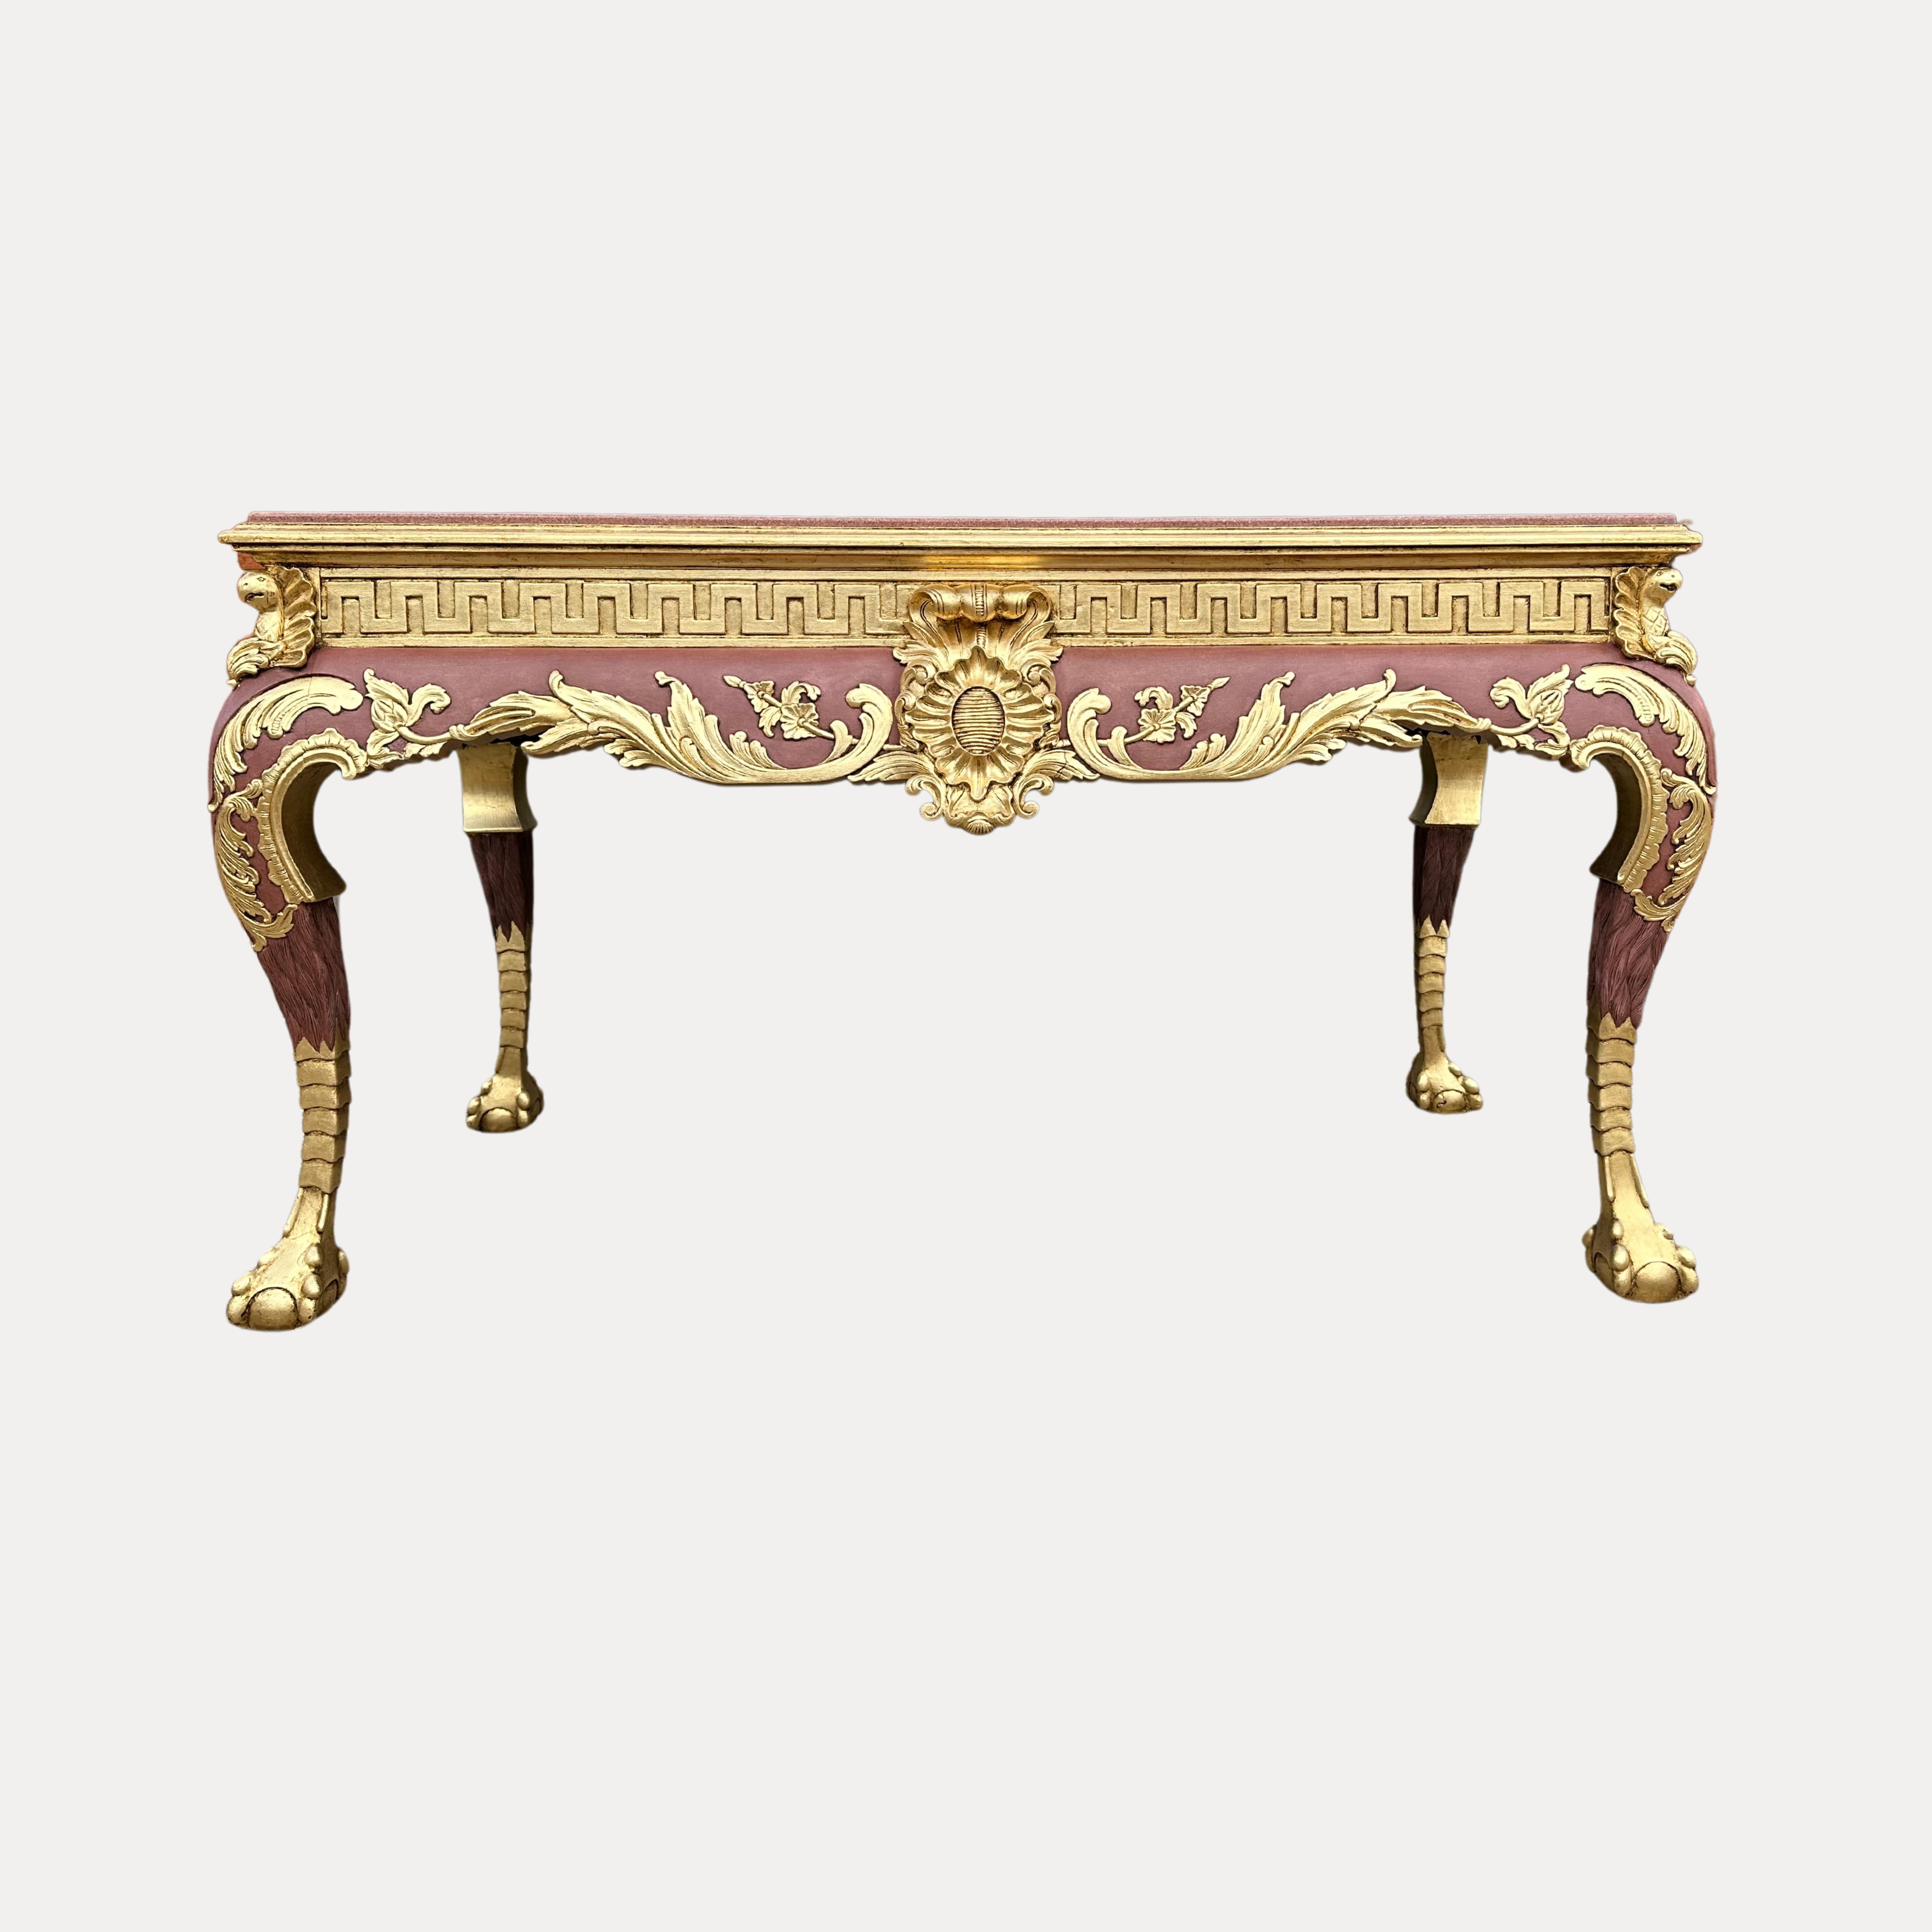 Dieser außergewöhnlich große, stark geschnitzte Mitteltisch aus vergoldetem Holz im Stil Ludwigs XIV. ist wirklich prächtig. Sowohl die Vorder- als auch die Rückseite sind mit einem zentralen Schild mit Sittichen an allen vier Ecken verziert.
Die